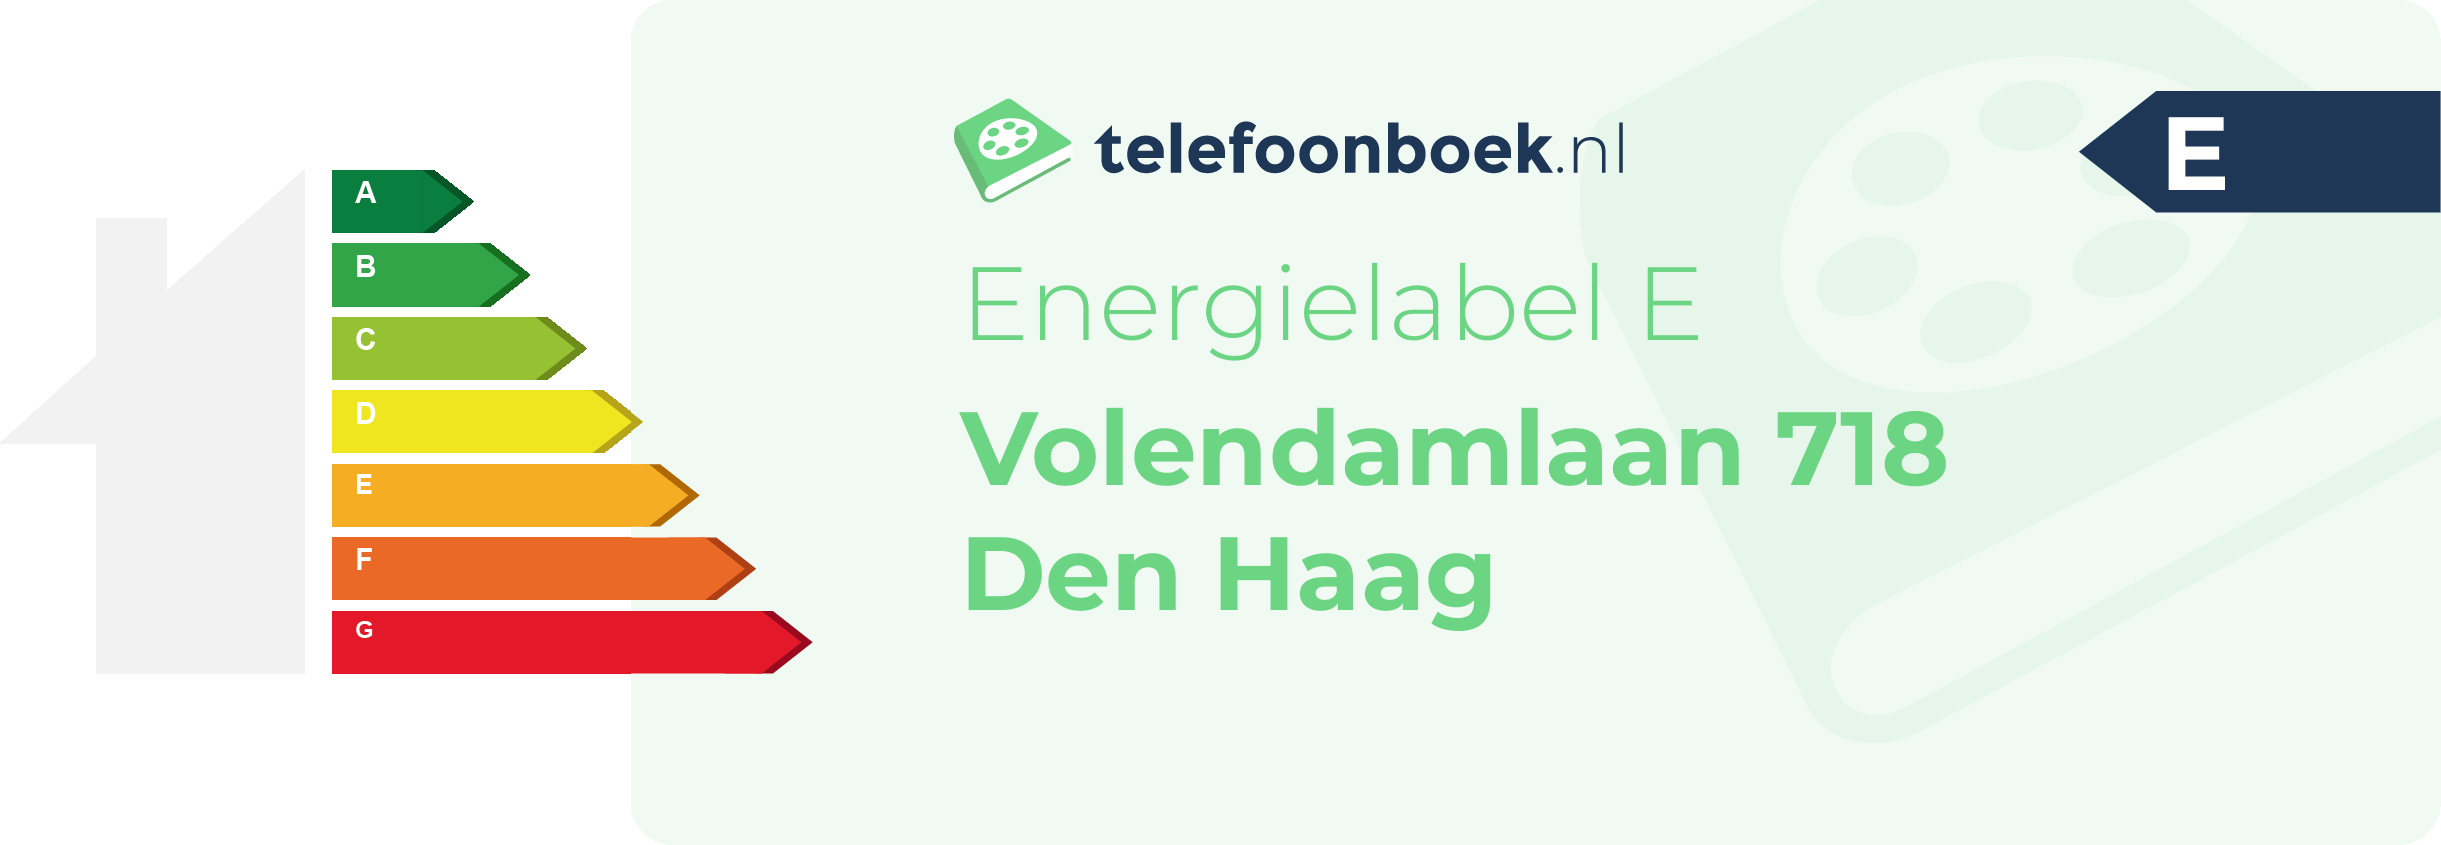 Energielabel Volendamlaan 718 Den Haag